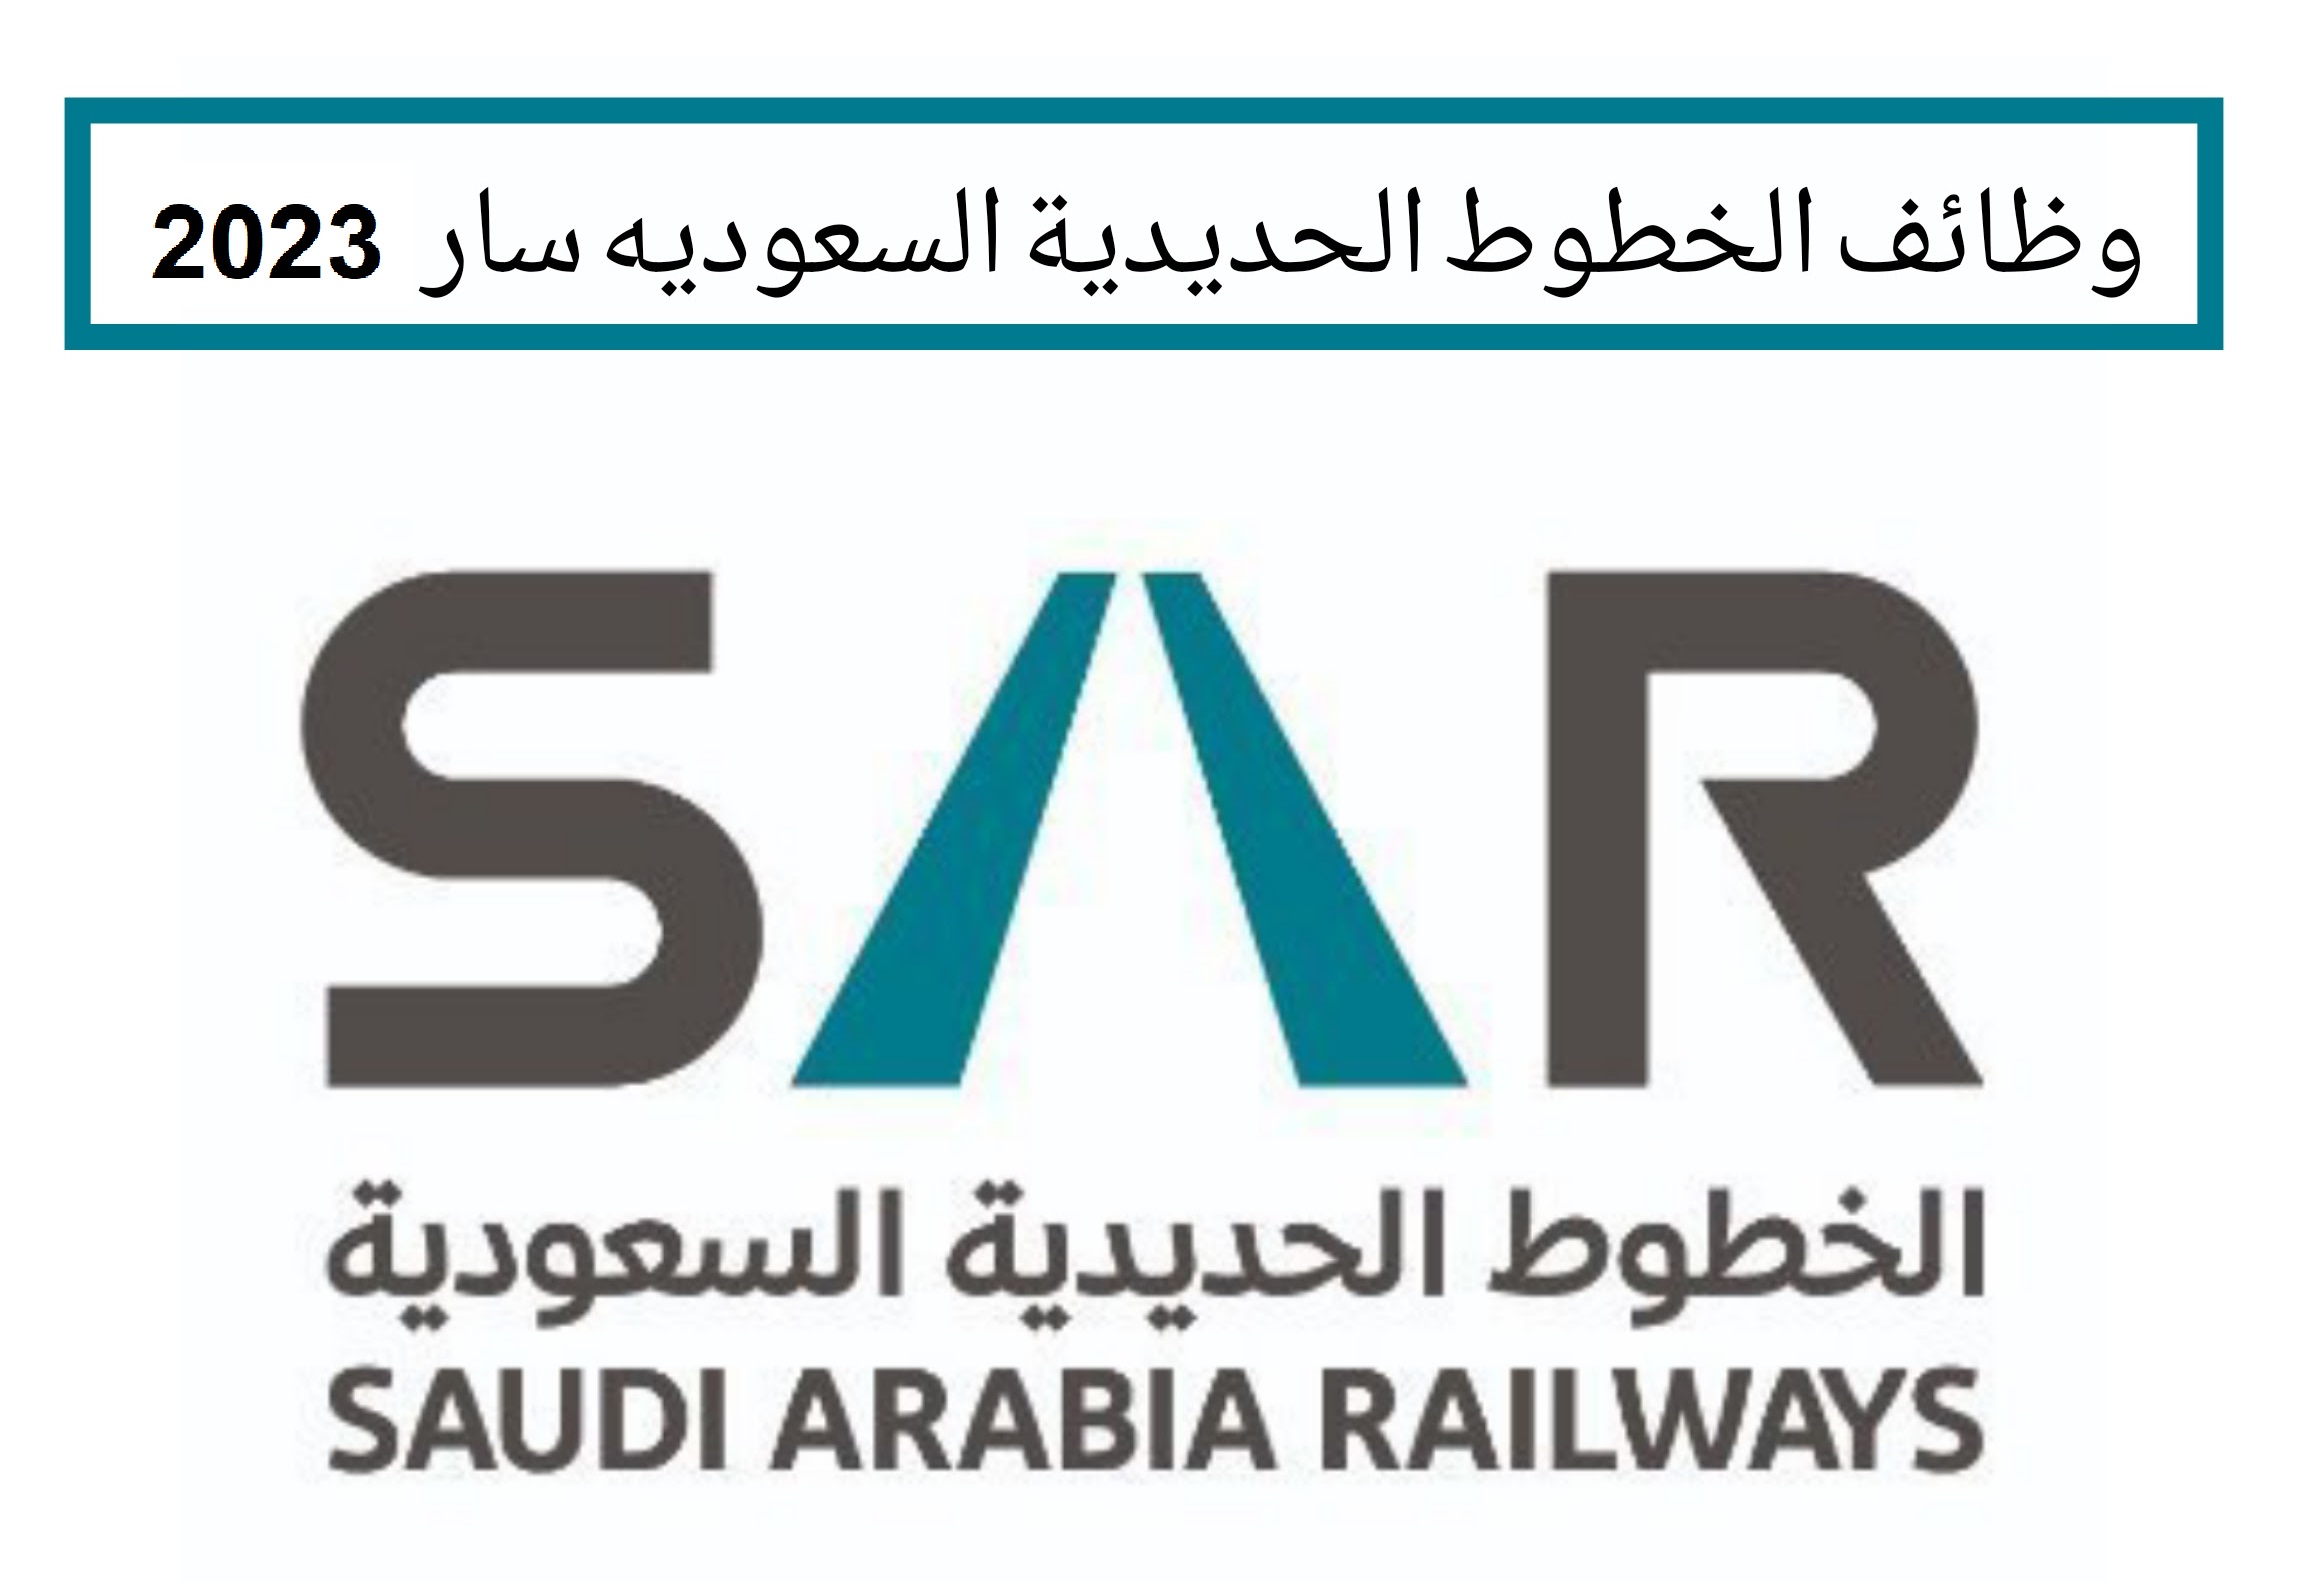 الشركة السعودية للخطوط الحديدية " سار" تعلن عن وظائف شاغرة لحملة الدبلوم